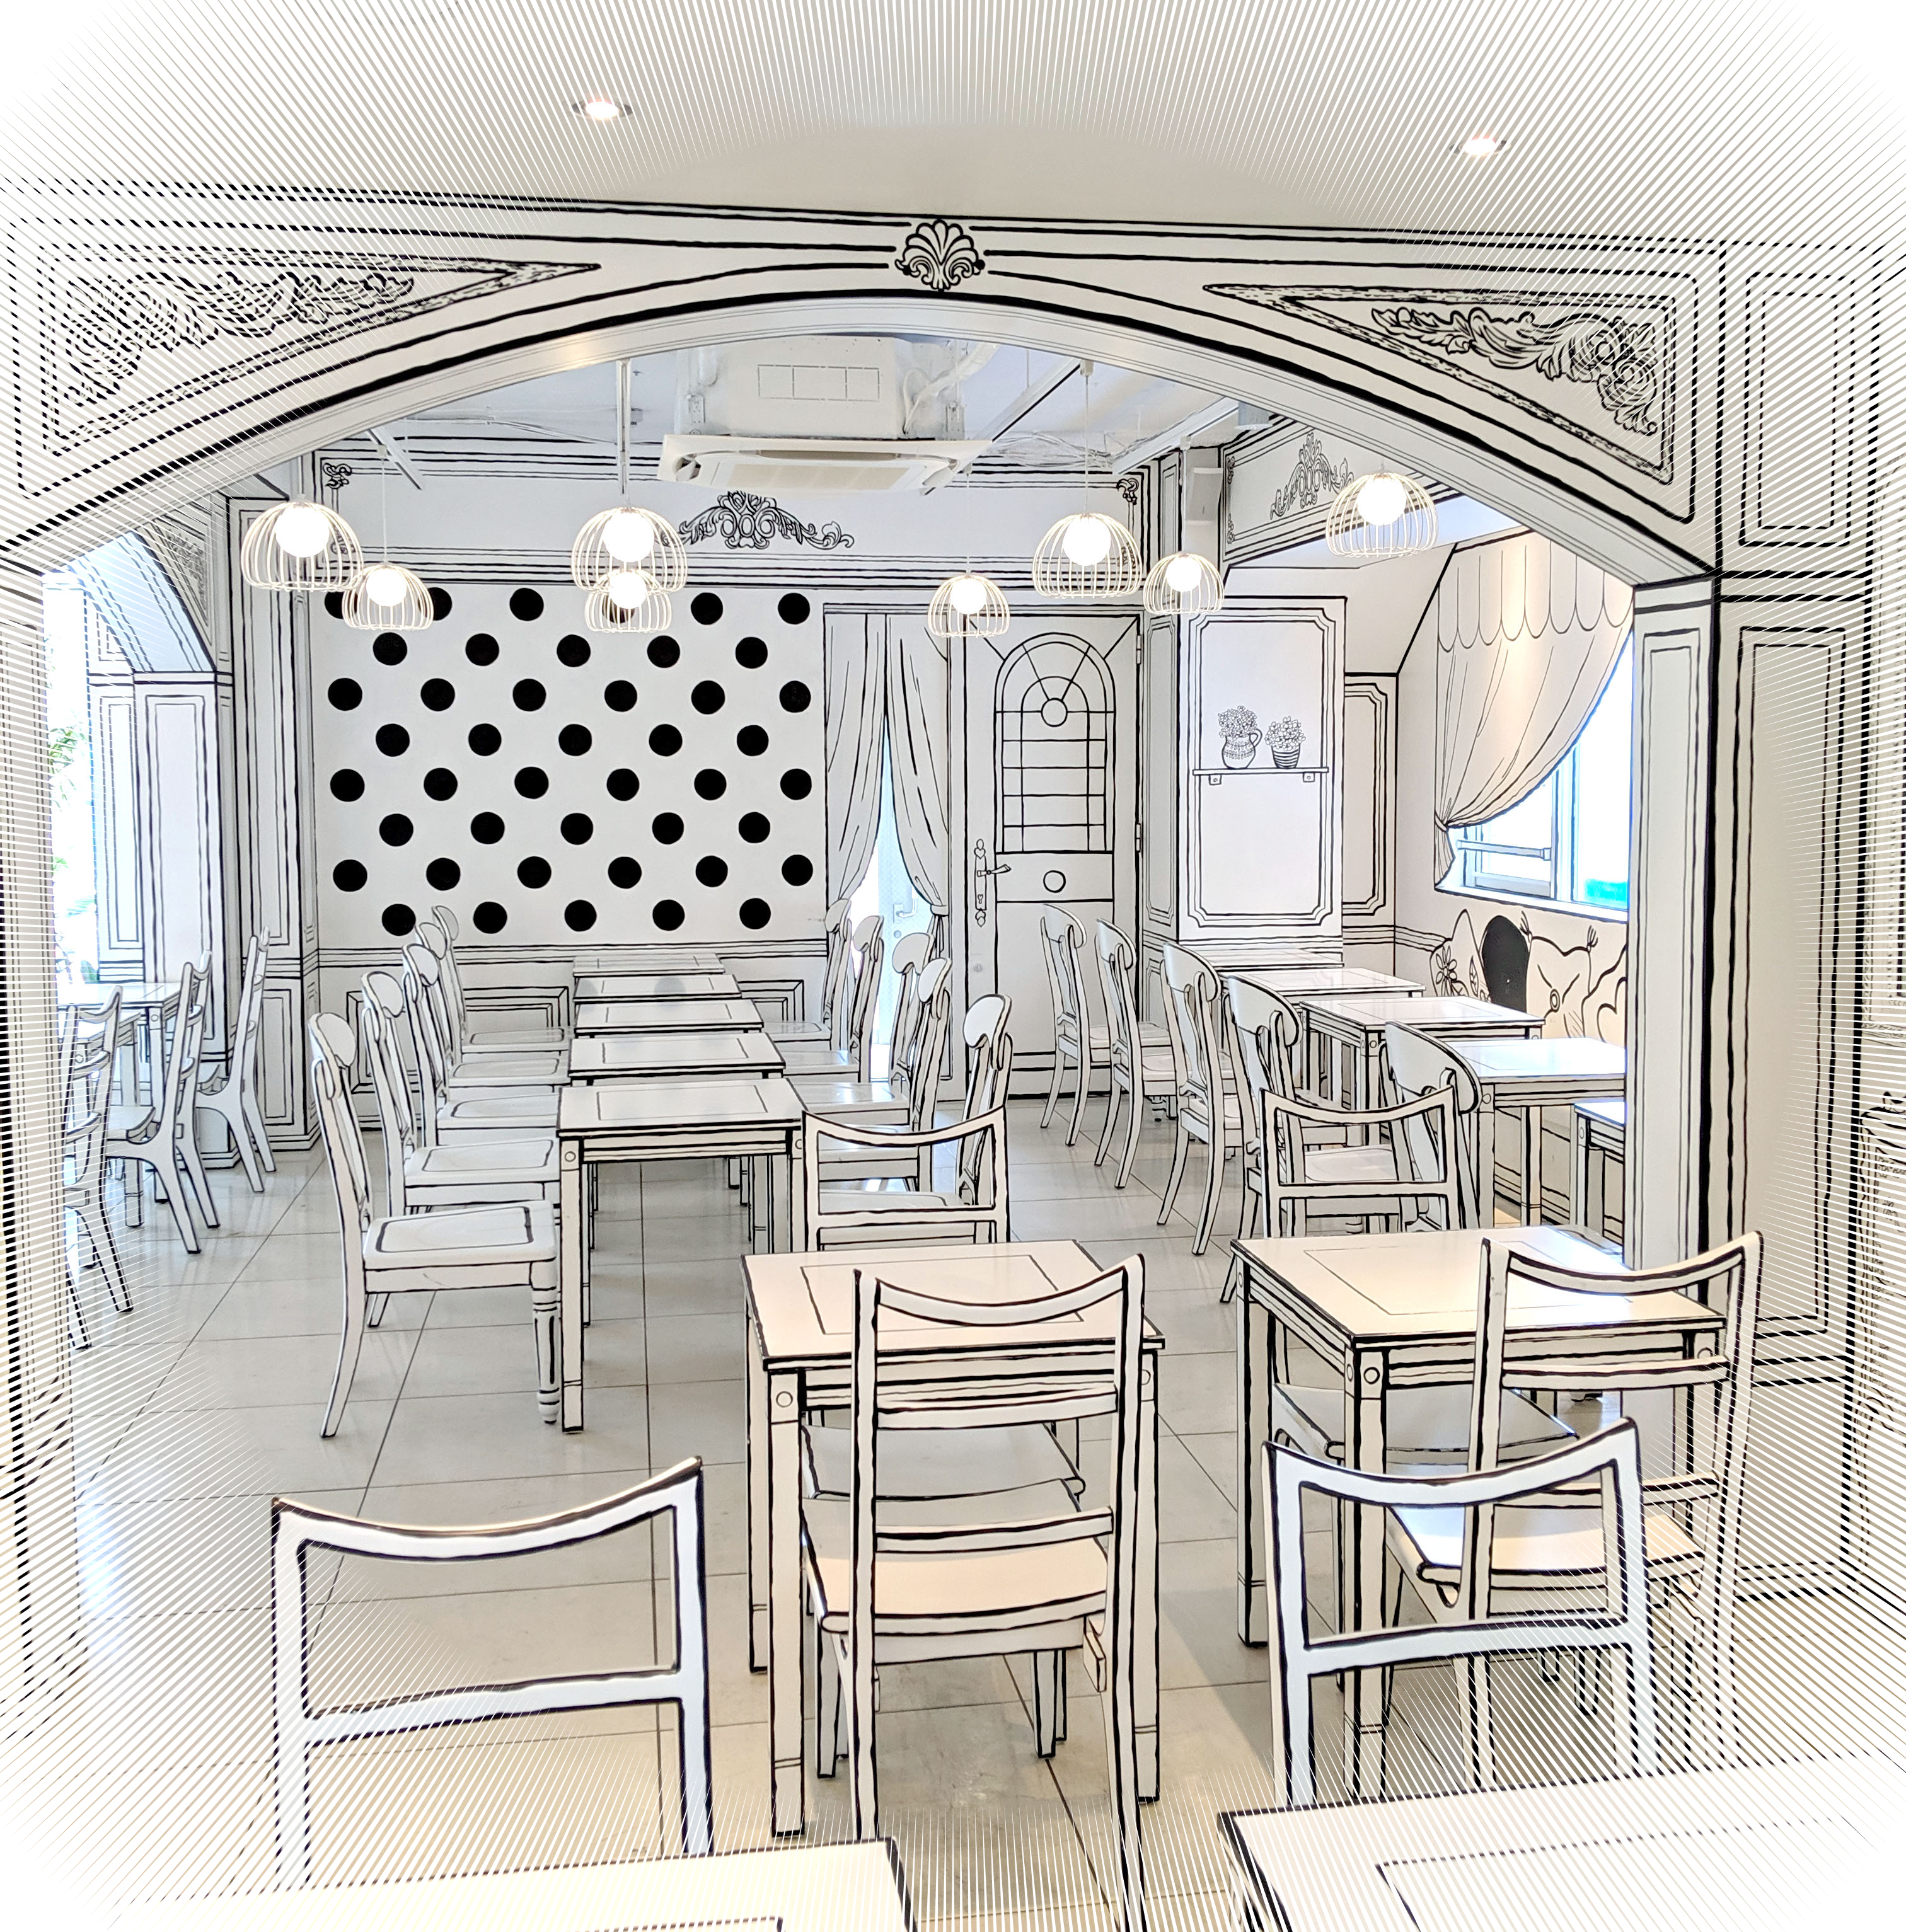 まるで漫画のなかに入ったみたい 内装全部が2次元に見える 2d Cafe がスゴイ 東京 新大久保 ロケットニュース24